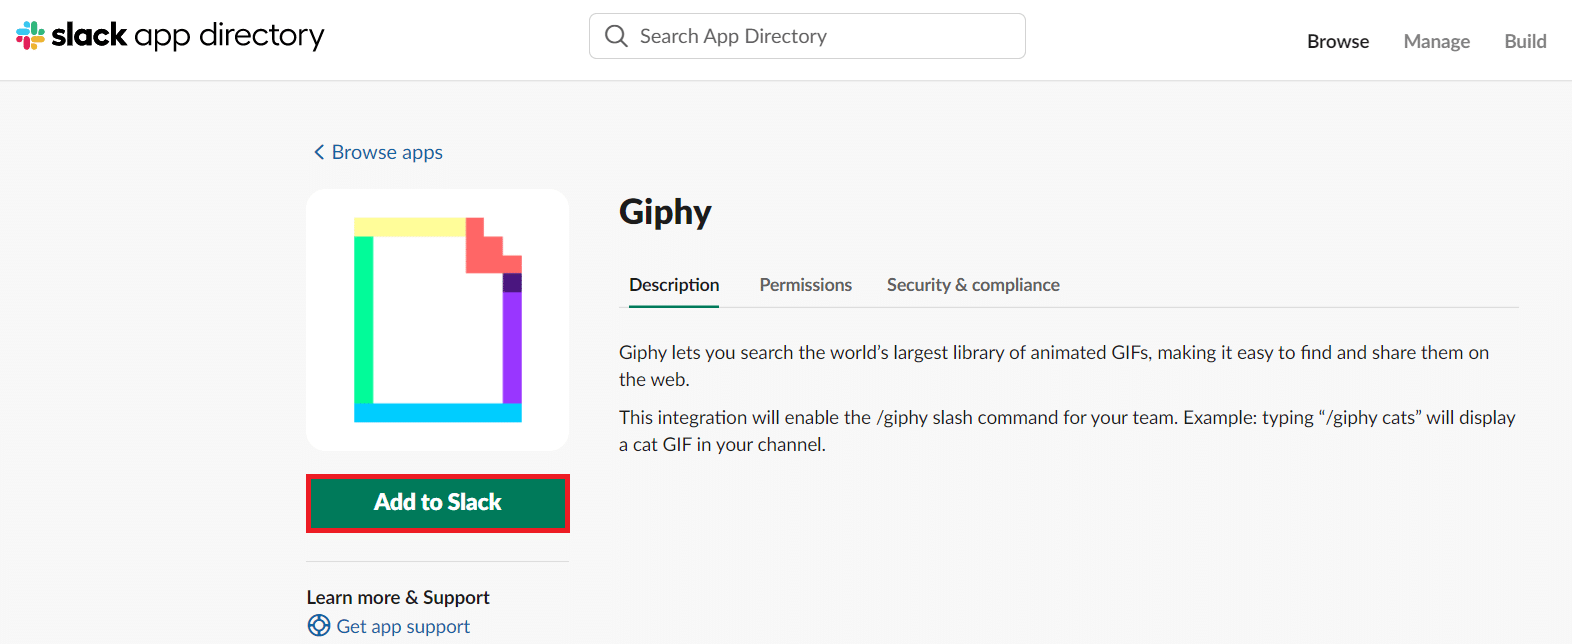 在新的 Giphy 應用頁面上，單擊添加到 Slack